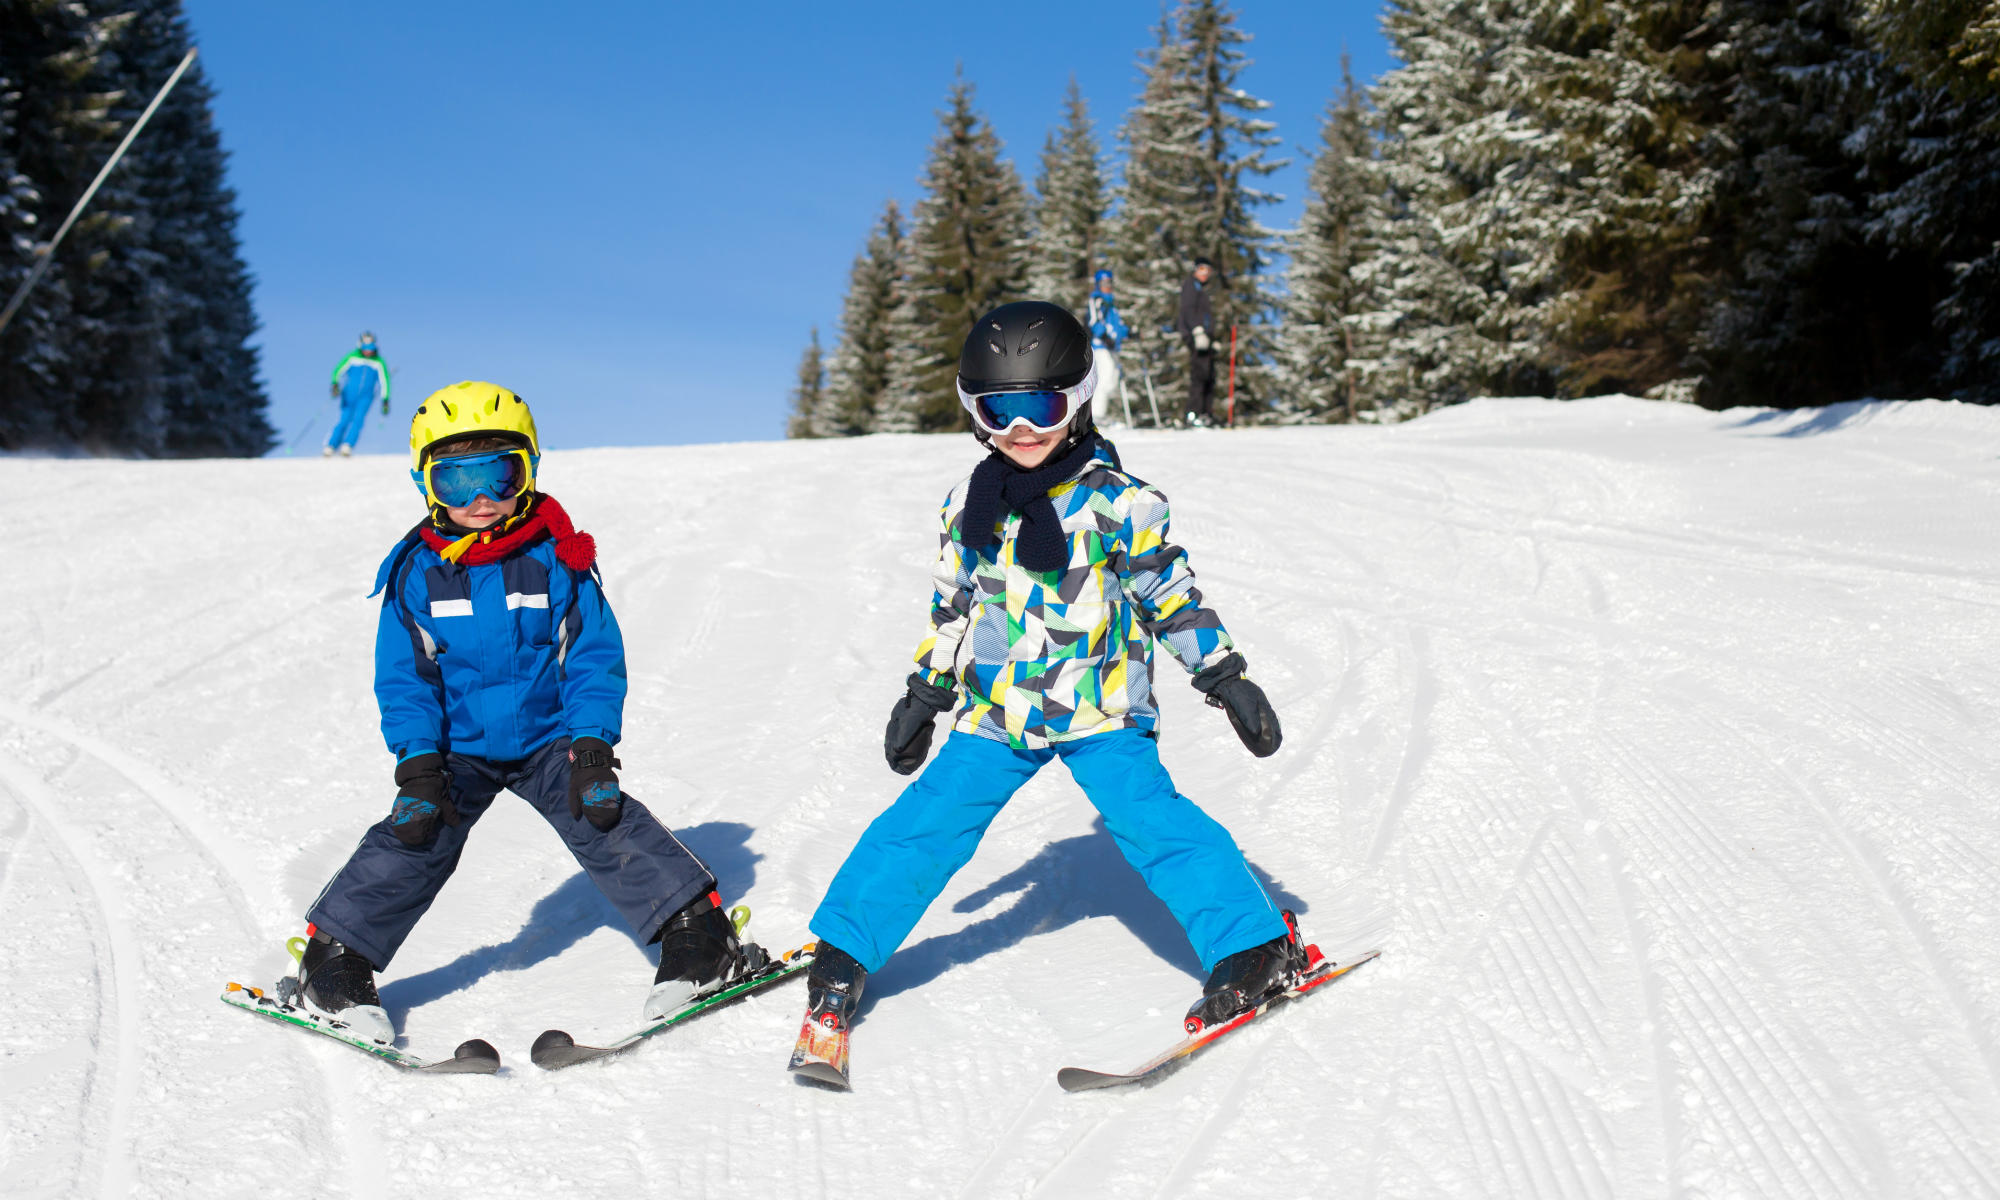 Che si tratti di bambini o adulti, imparare a sciare è meglio farlo con uno spazzaneve.